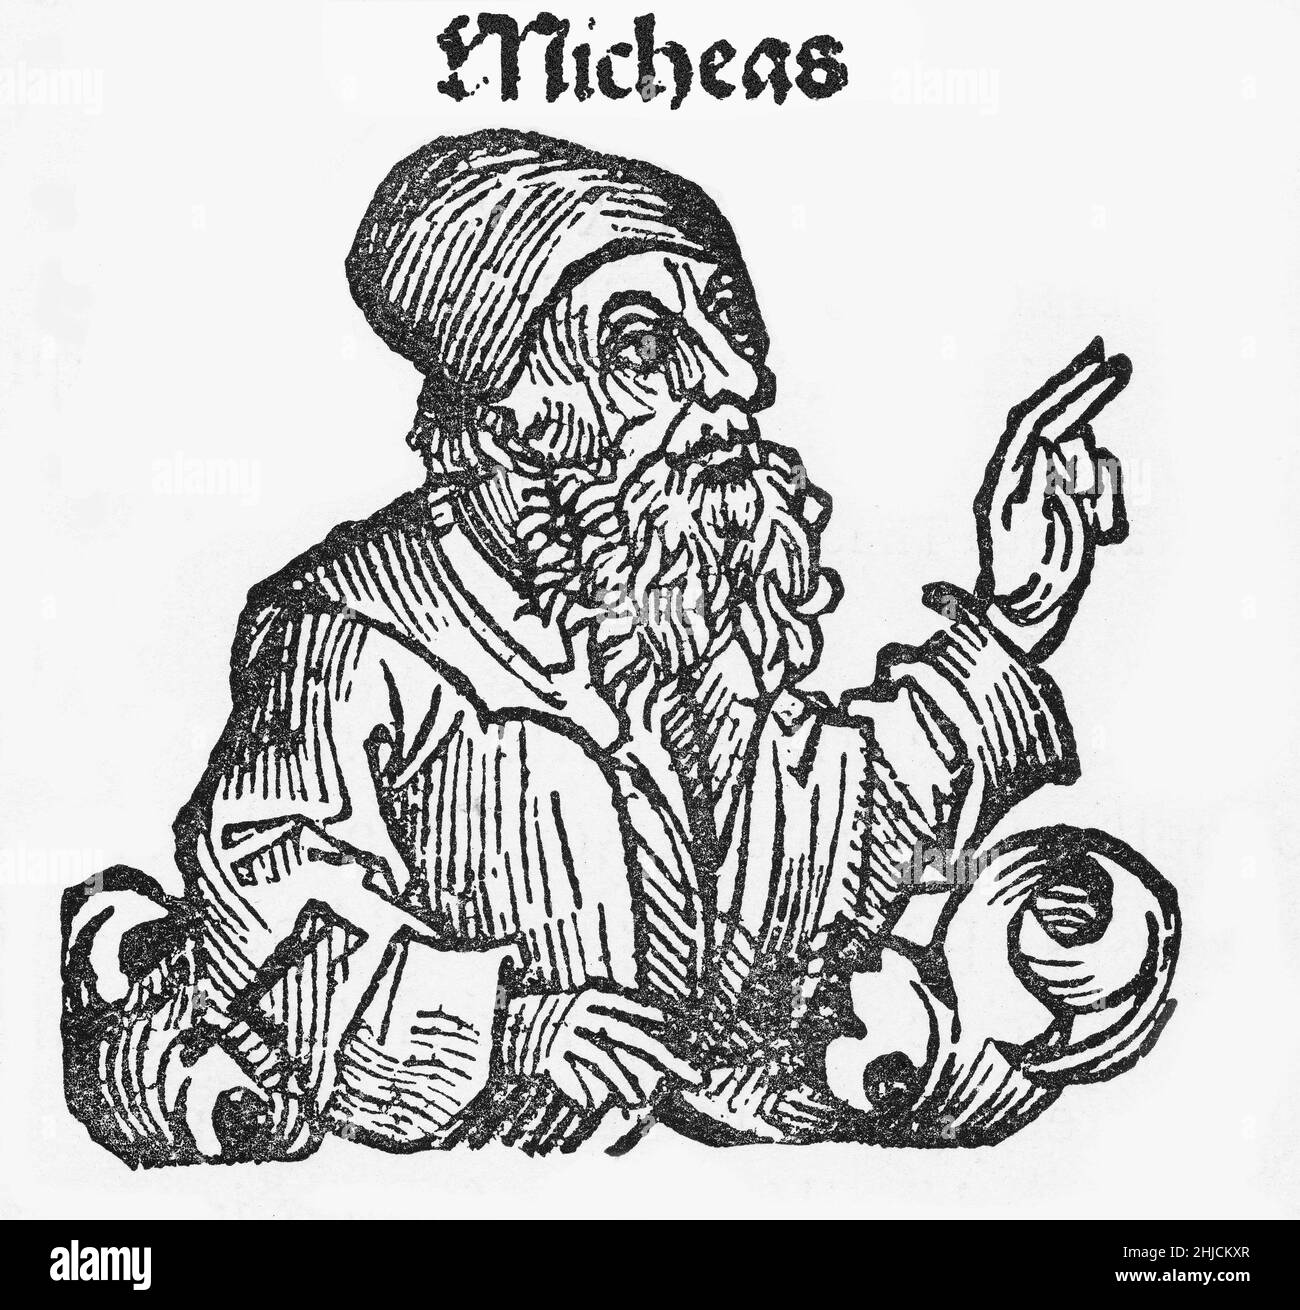 Illustration de Micheas, de la chronique de Nuremberg, vers 1493.Michée, ou Michée, était un prophète de 8th ans.Il est l'auteur du Livre de Michée de la Bible hébraïque. Banque D'Images